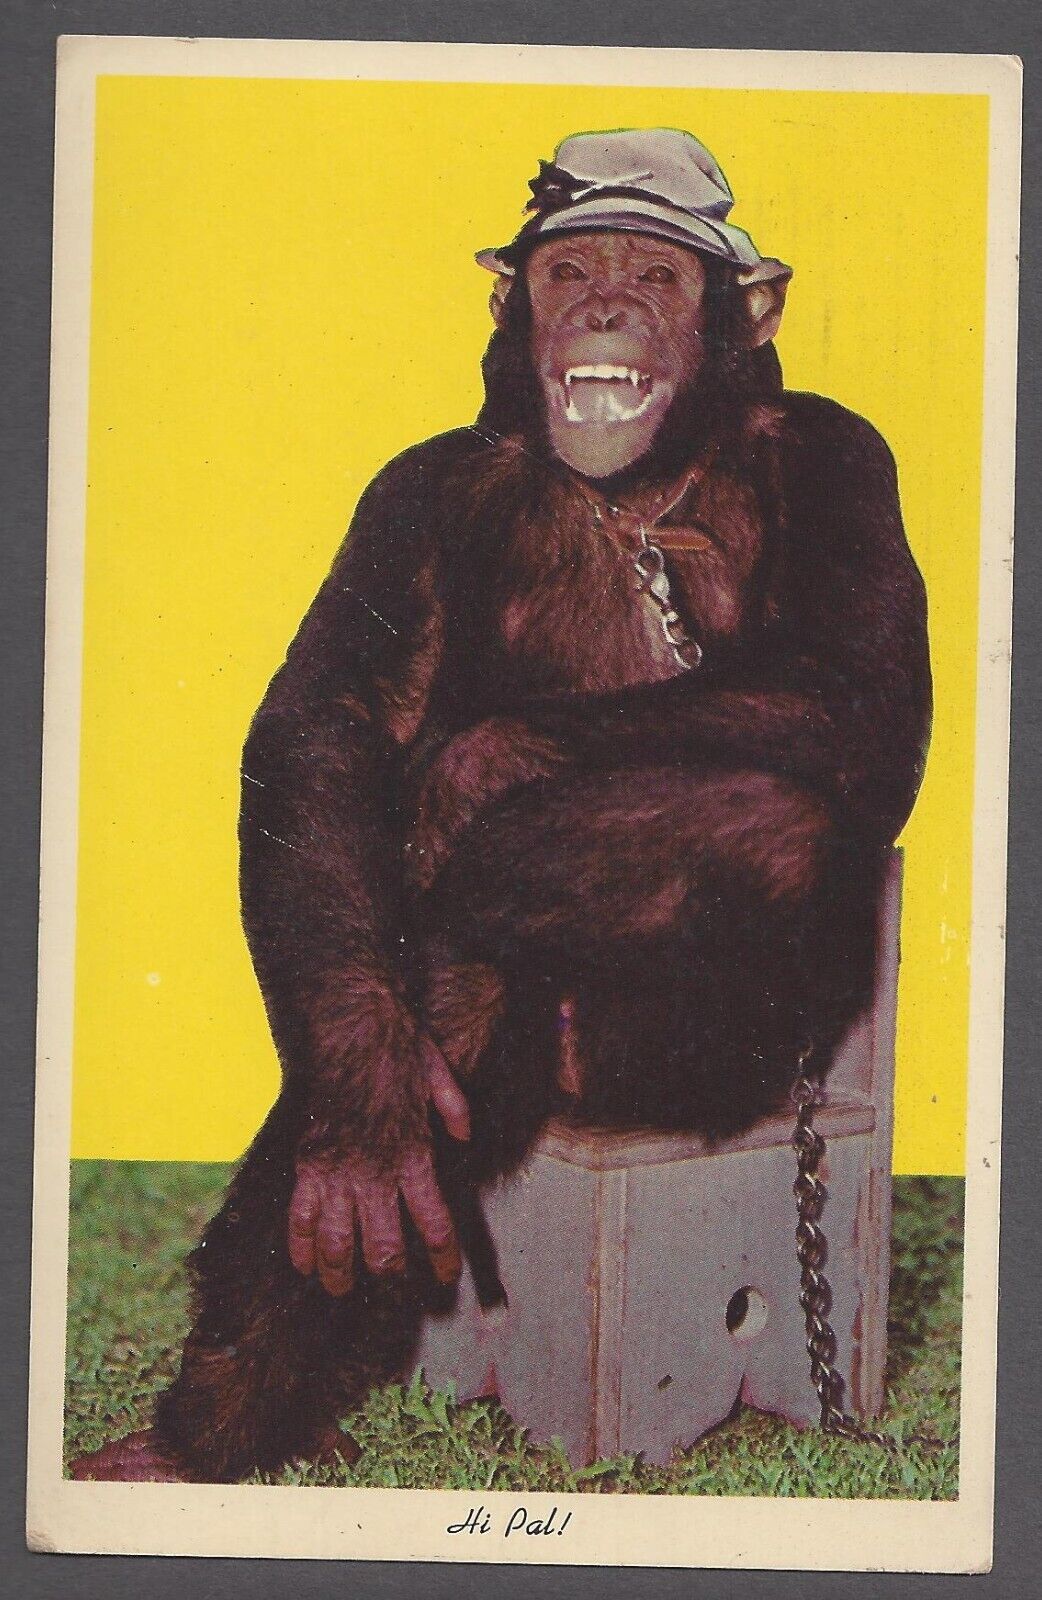 Hi Pal Postcard Laughing Smiling Chimpanzee Monkey Wearing Hat Sitting on Chair